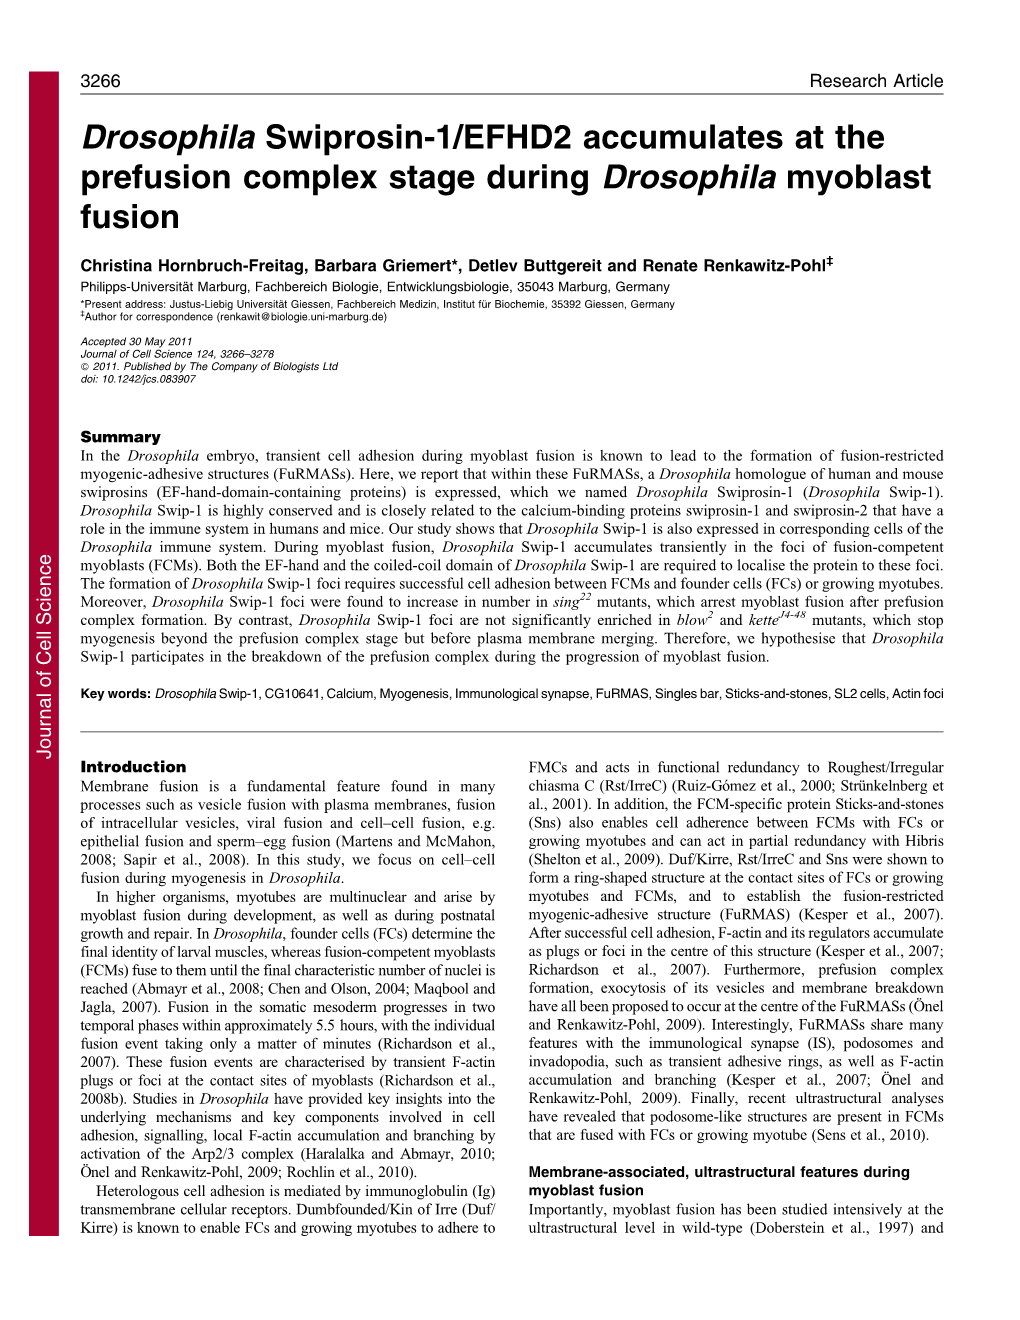 Drosophila Swiprosin-1/EFHD2 Accumulates at the Prefusion Complex Stage During Drosophila Myoblast Fusion